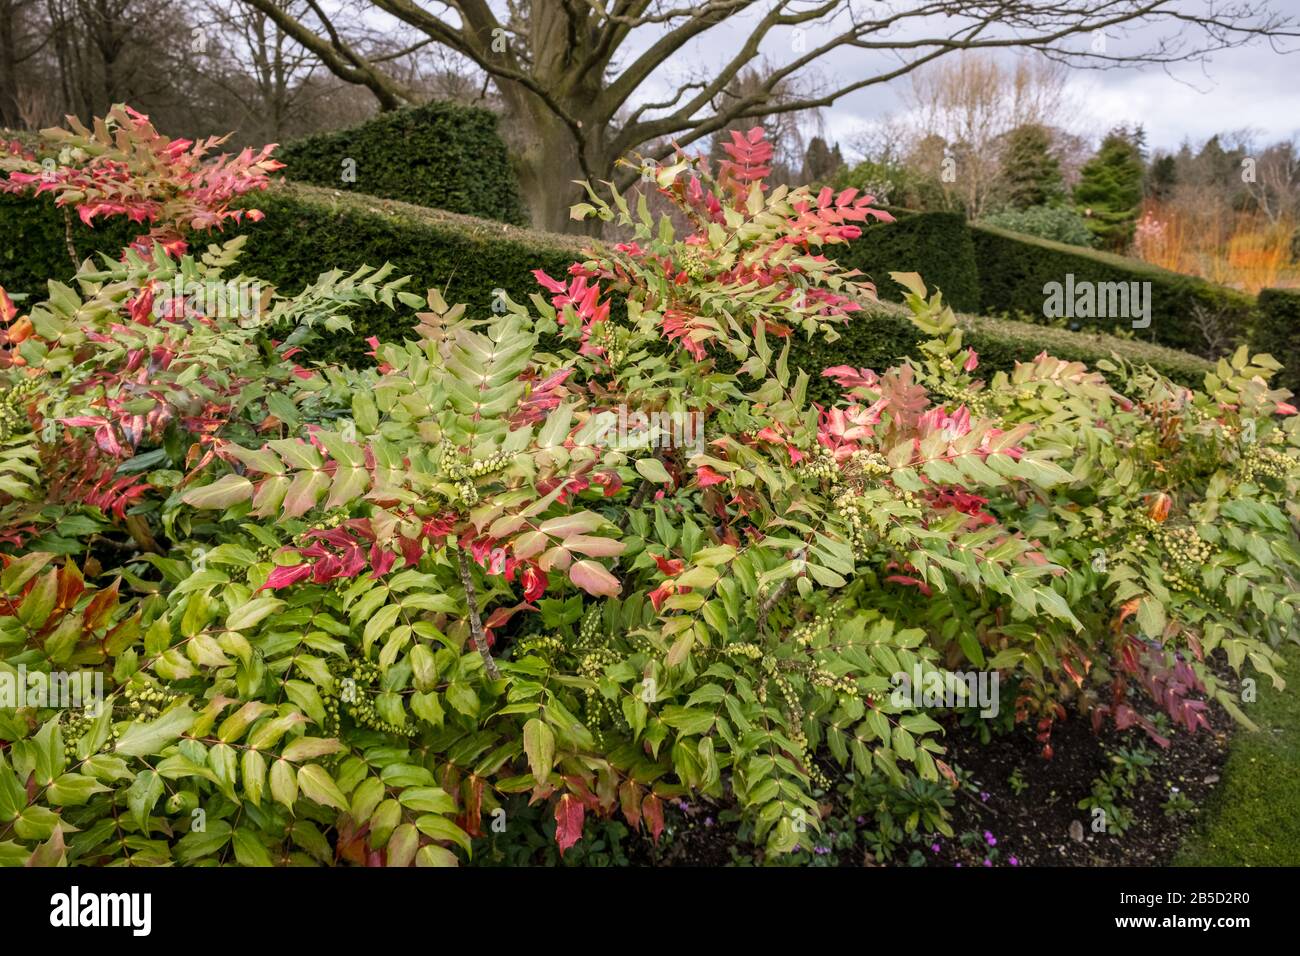 Mahonia Bealei arbusto perenne con hojas teñidas de rojo que proporcionan color y textura en un jardín de finales de invierno / principios de primavera, marzo, Inglaterra, Reino Unido Foto de stock